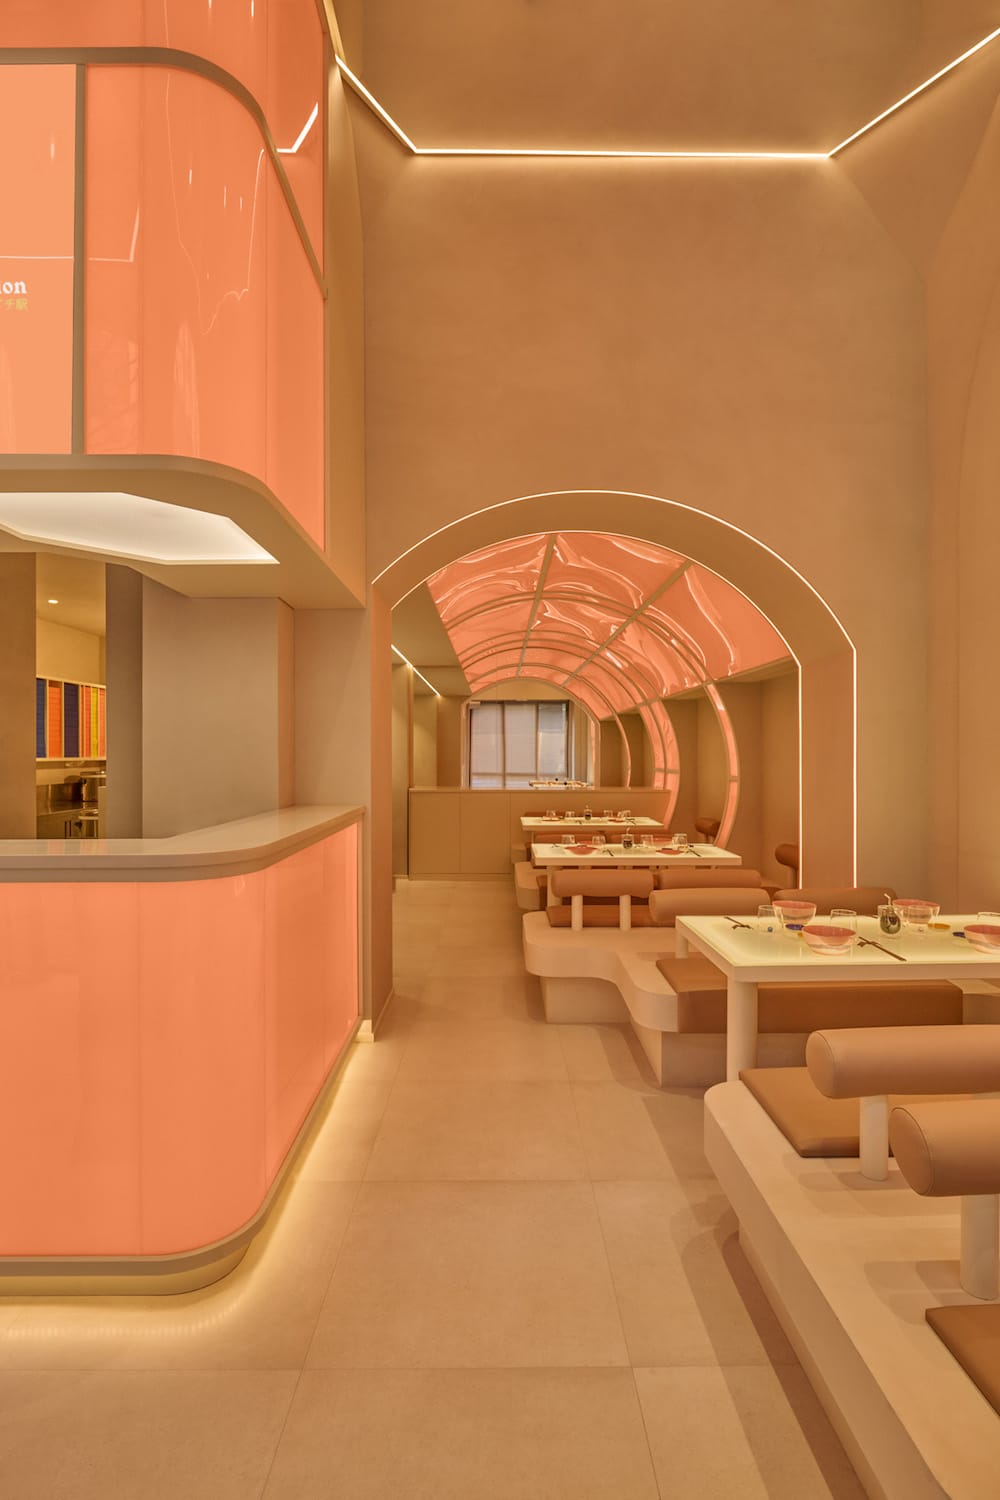 Dieses Restaurant erinnert an ein Raumschiff der 90er Jahre. Interiordesign und Marketing für das Mailänder Sushi Restaurants Ichi Station von der Designagentur Masquespacio